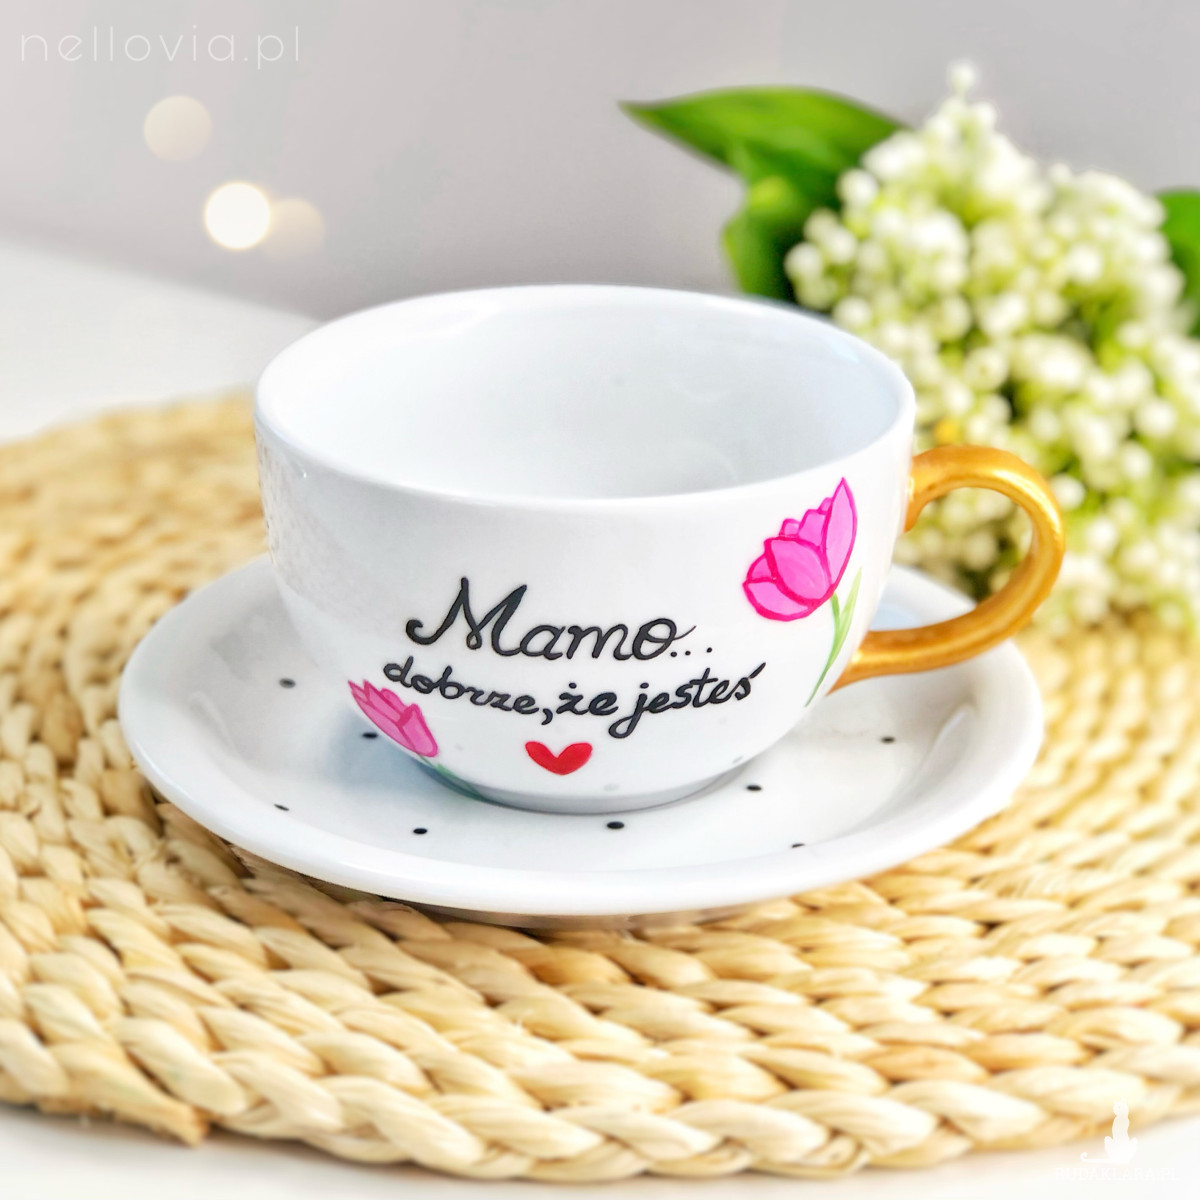 Filiżanka dla Mamy z dedykacją na kawę “Mamo dobrze, że jesteś” z kwiatami